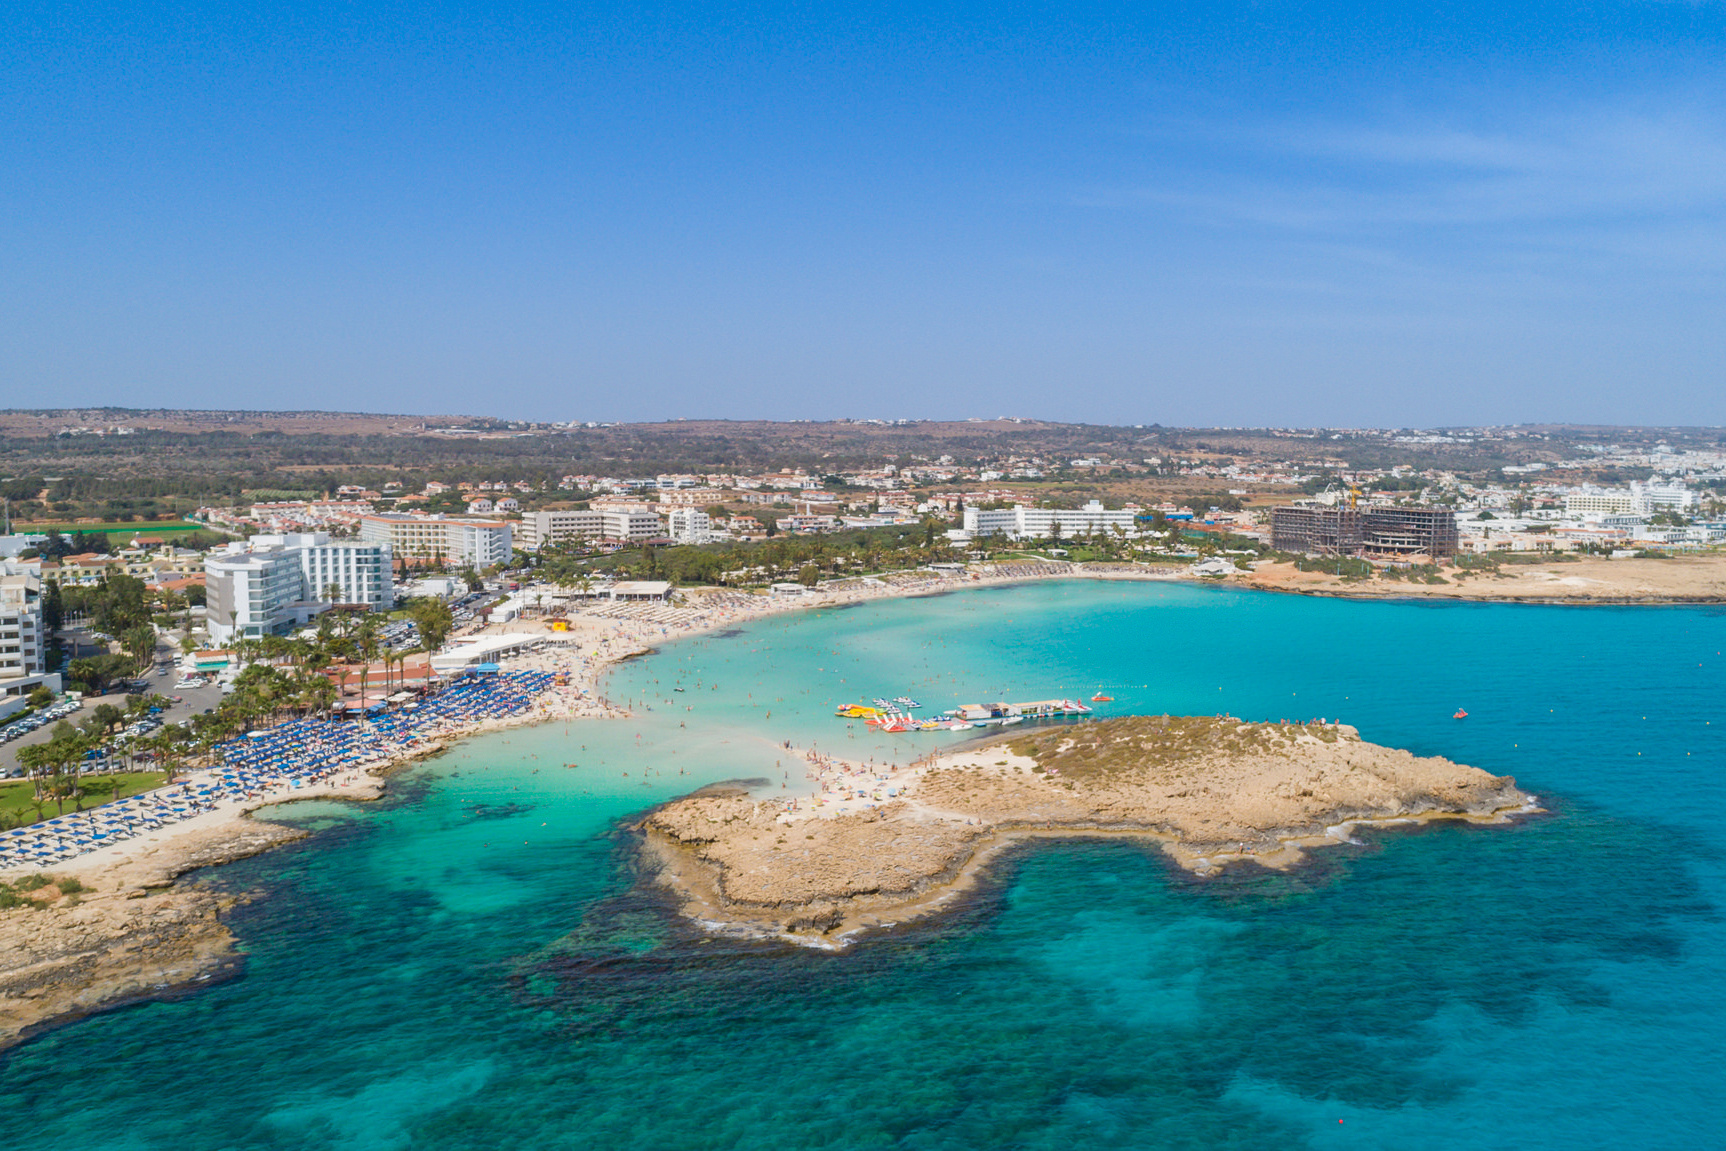 Море на Кипре — главный конкурент исторических памятников, которые достались острову за длинную и богатую историю